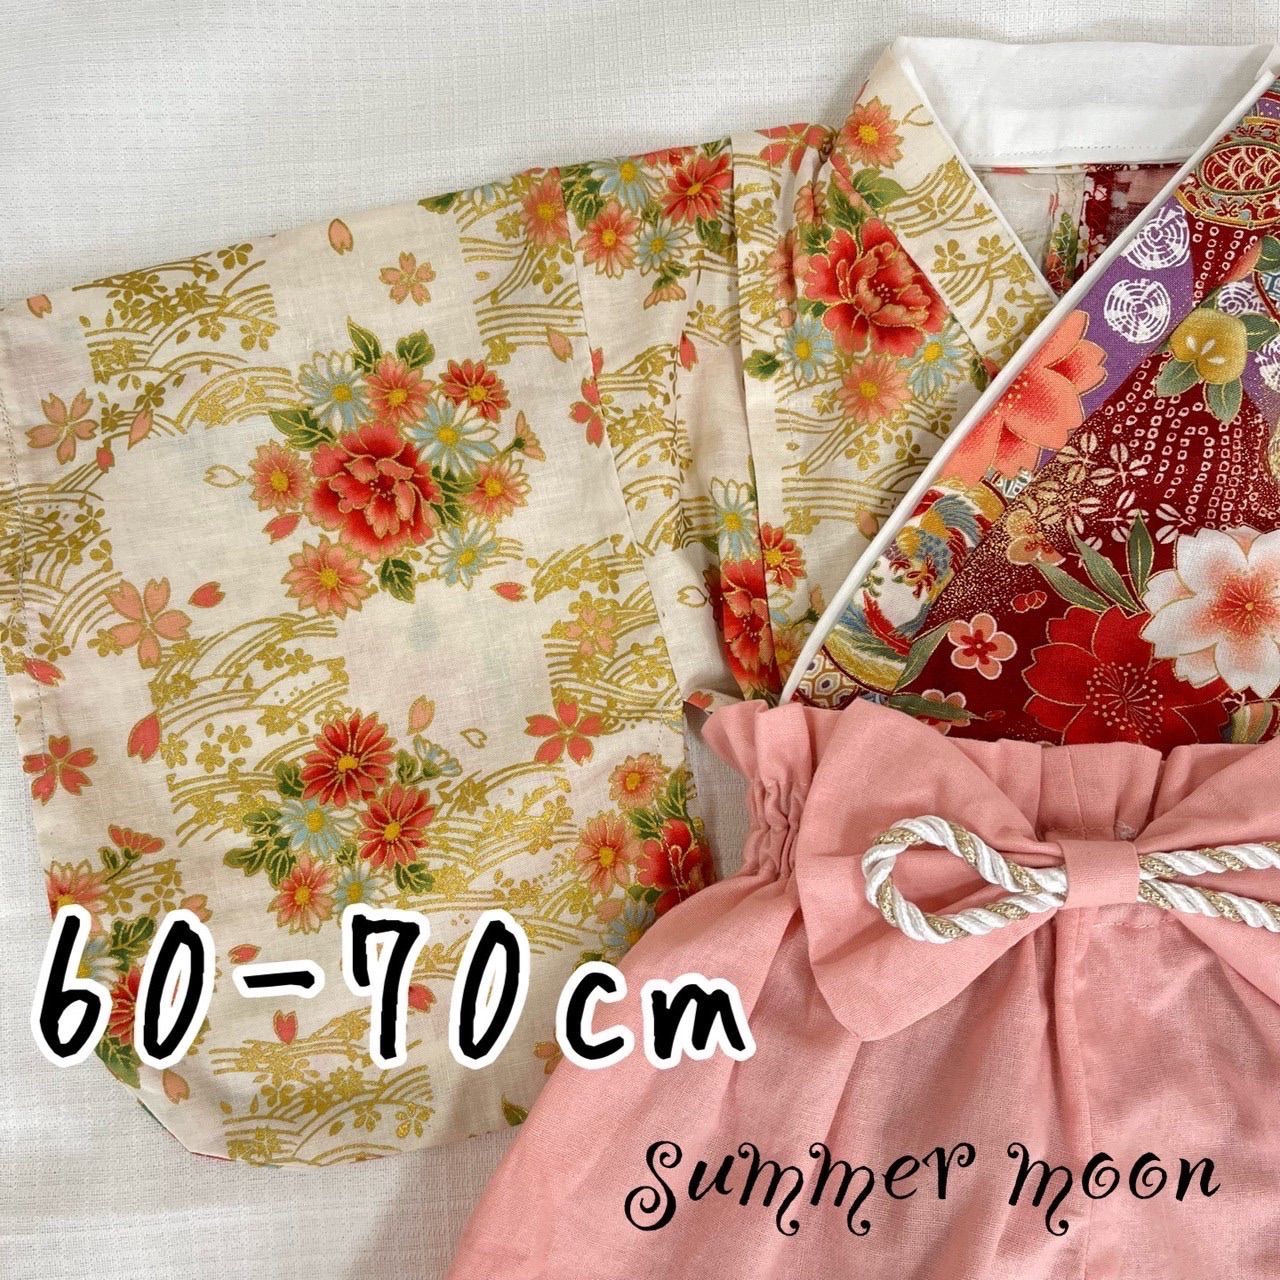 ベビー袴 ハンドメイド 60-80cm 被れる兜付き - ファッション雑貨